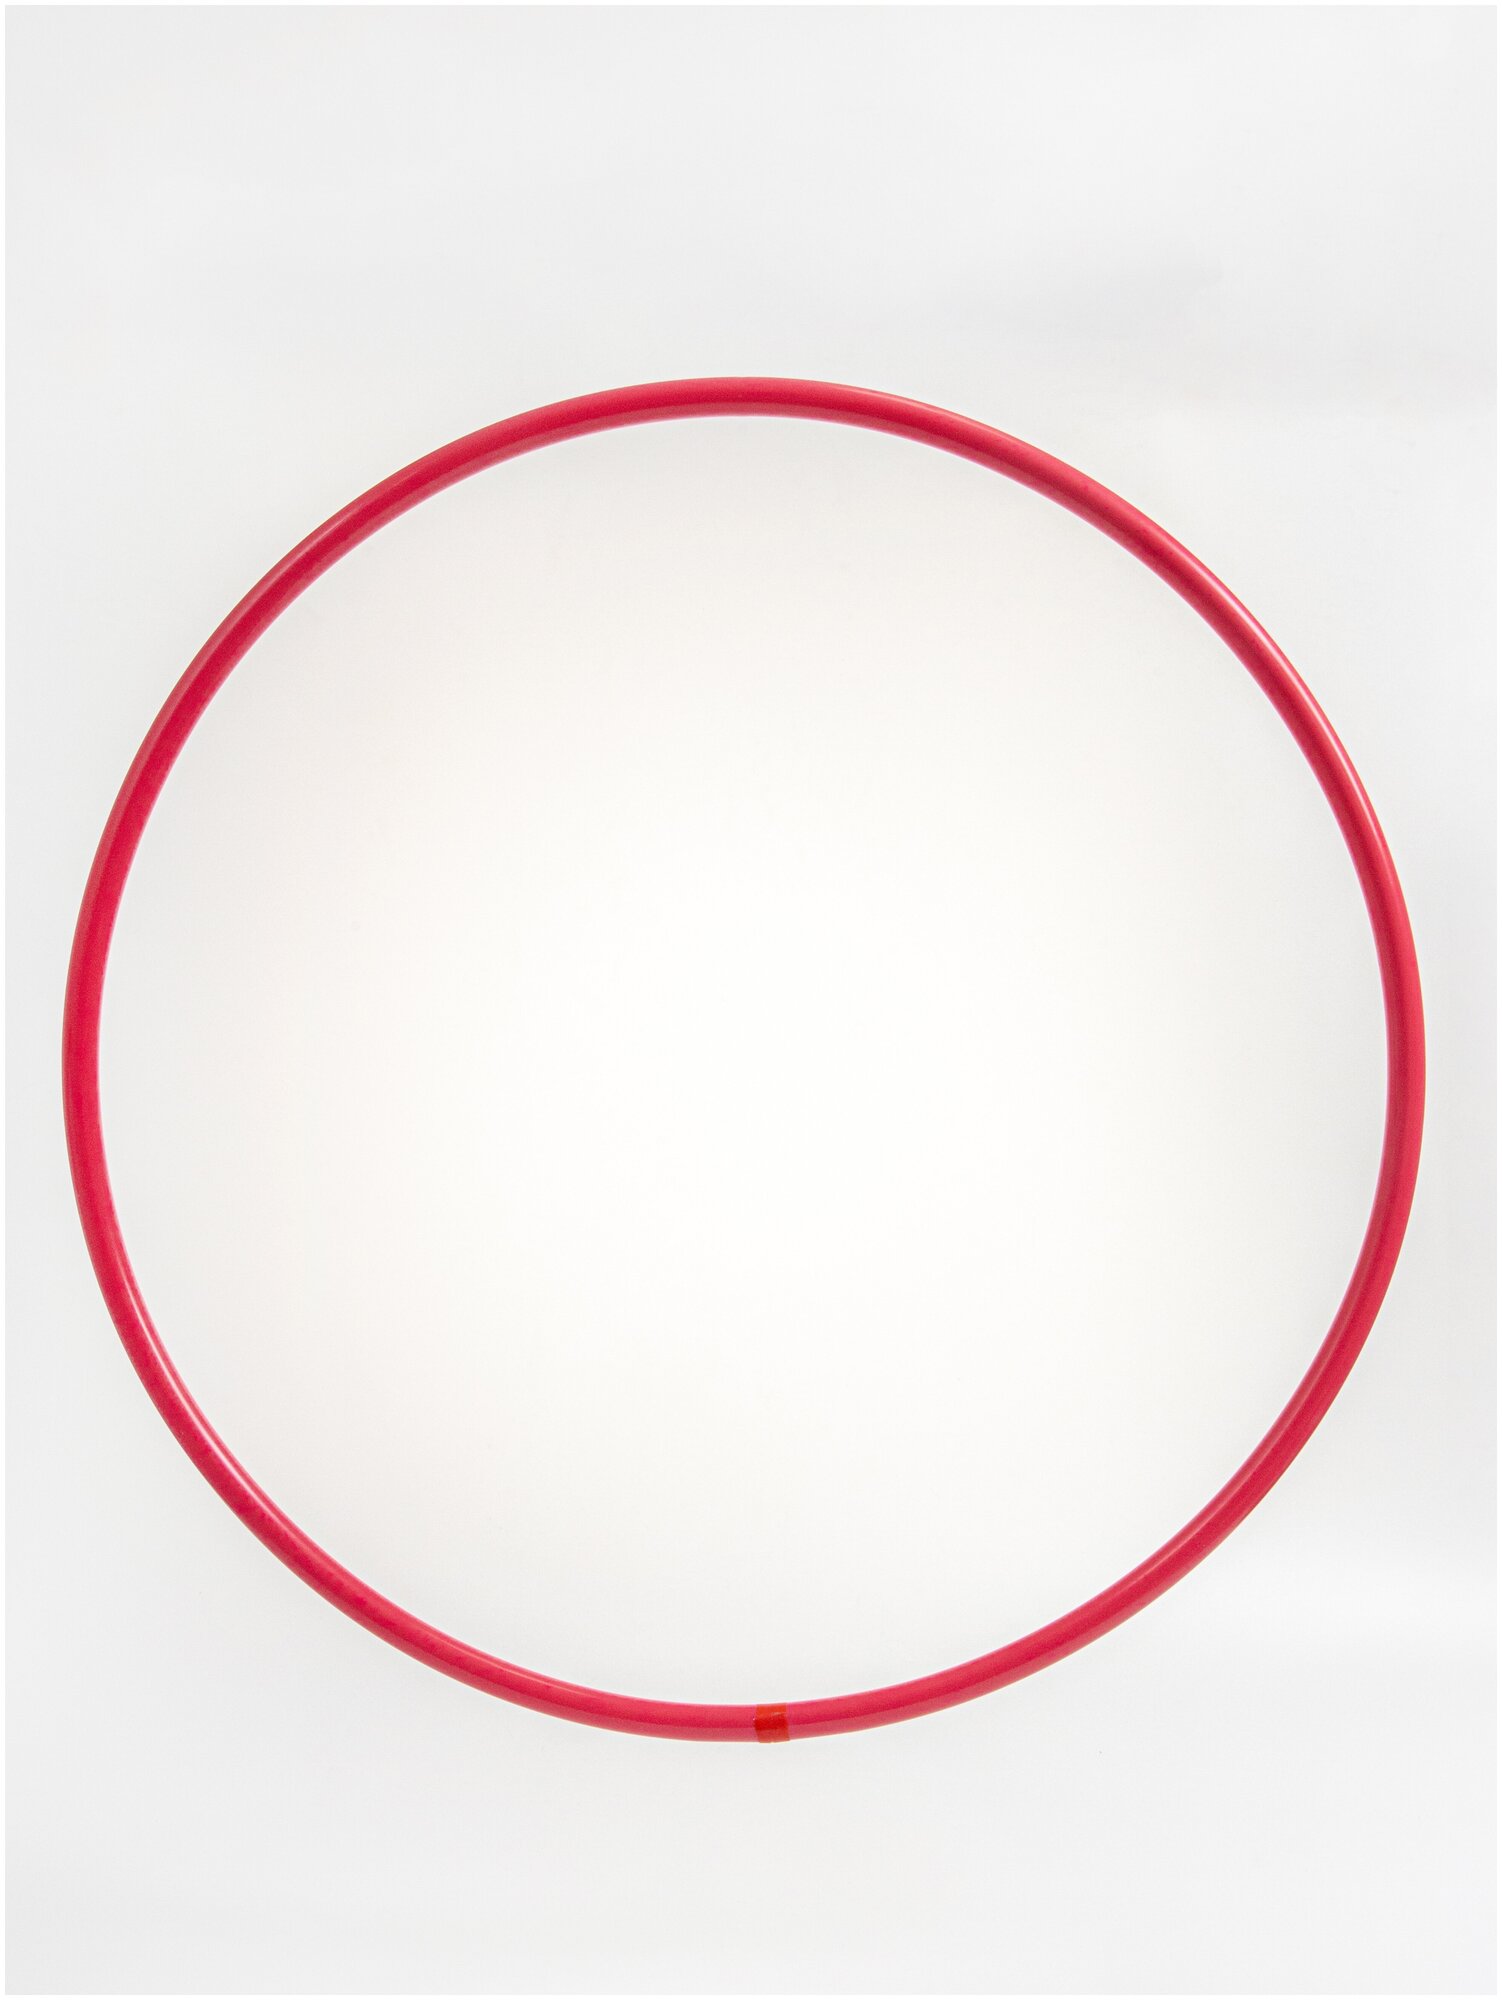 Обруч профессиональный для художественной гимнастики, дуга 18 мм, d=60 см, цвет малиновый